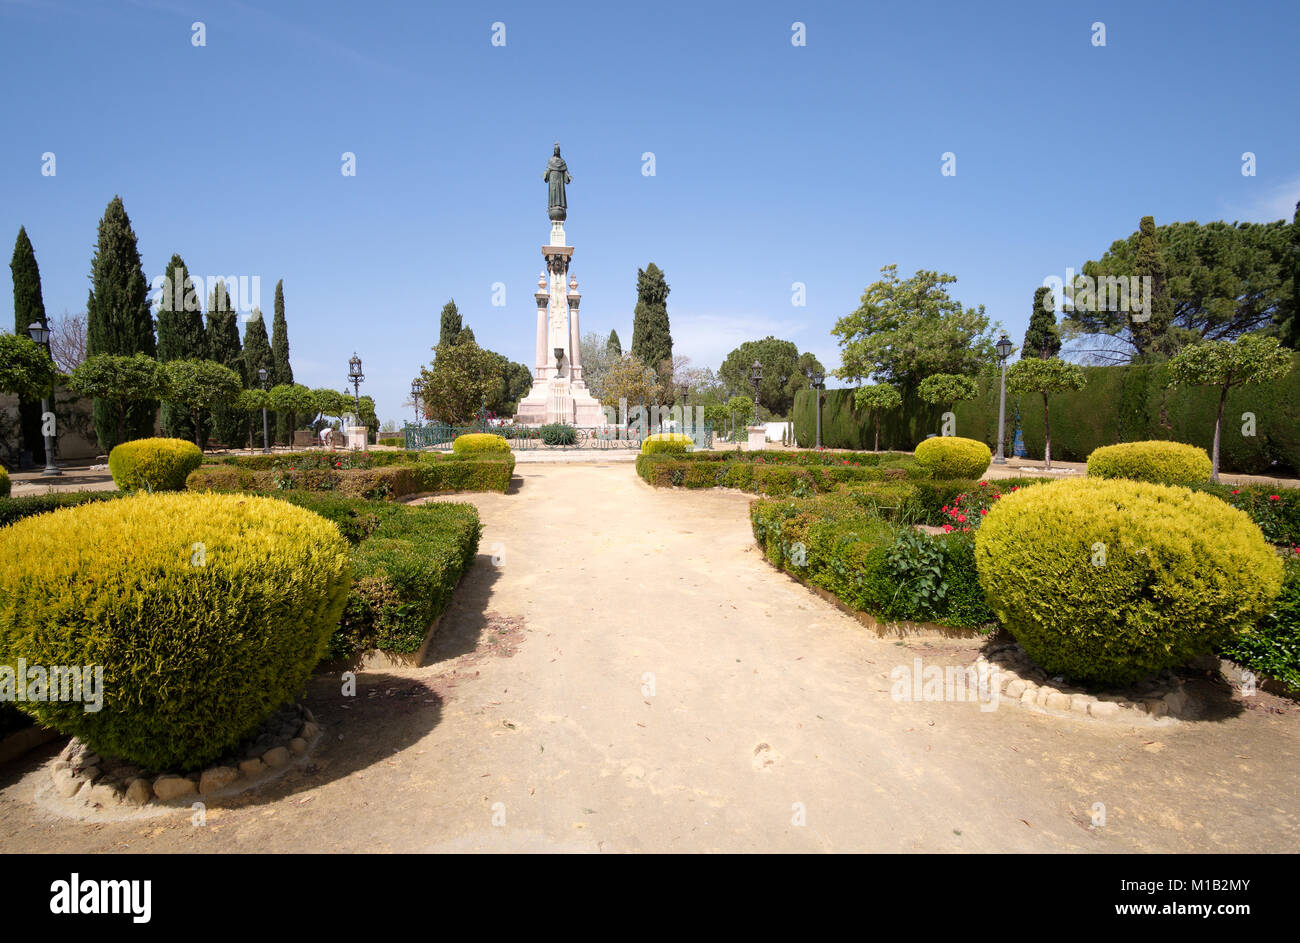 Jardins del Corazon de Jesus (Jardins du cœur de Jésus), Antequera, Malaga, Andalousie, Espagne Banque D'Images